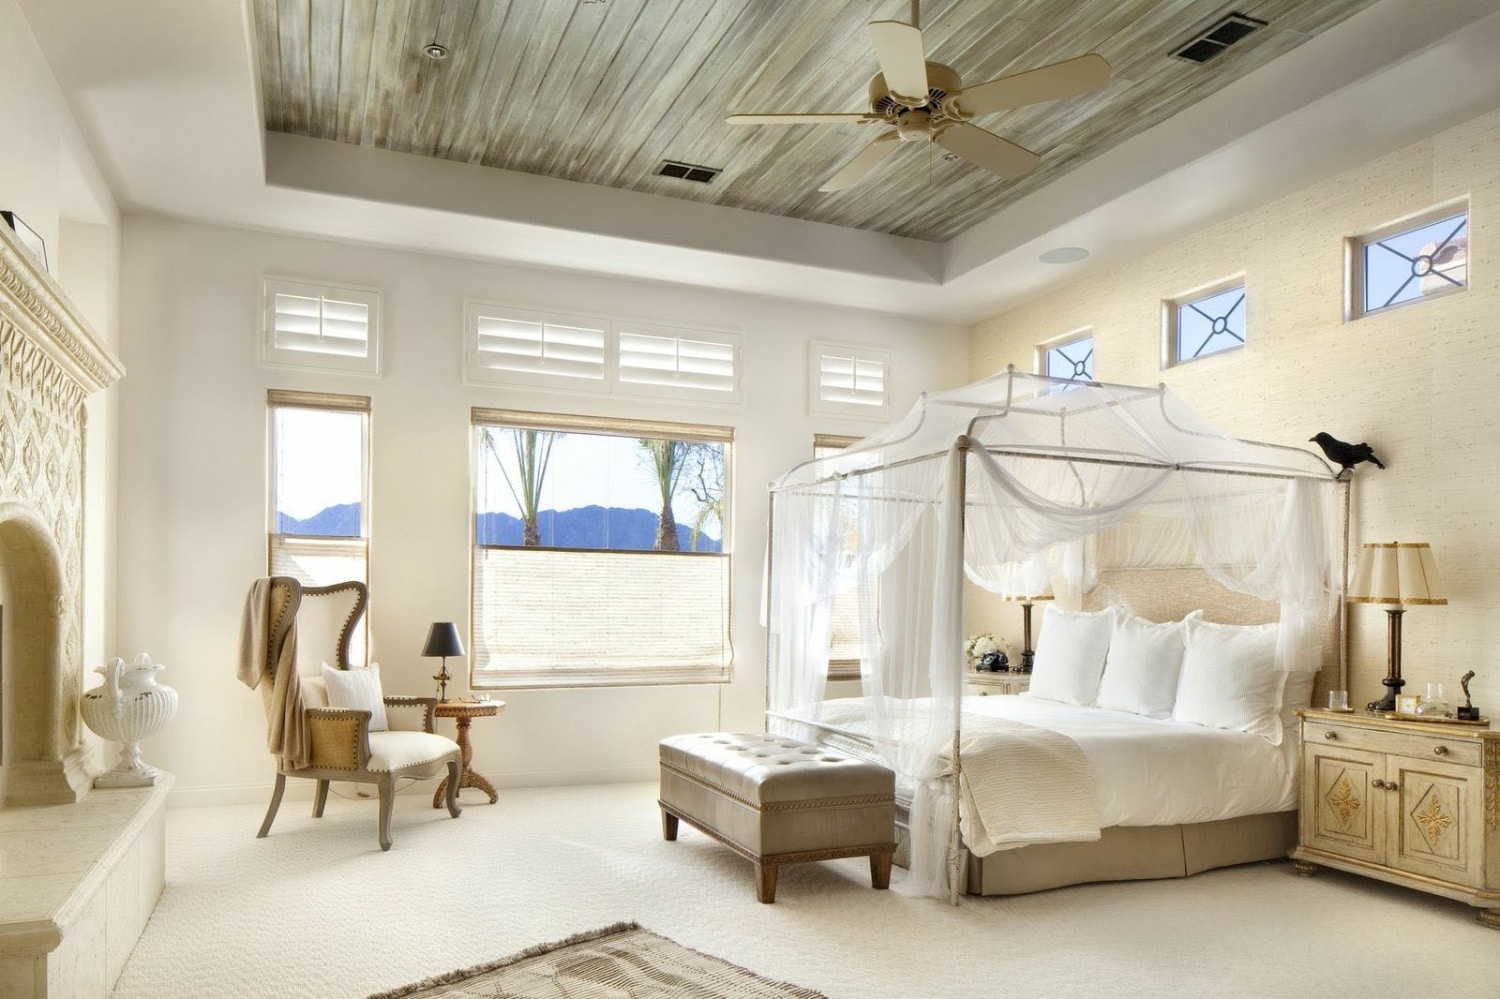 Szebbnél szebb baldachinos ágyak – nem csak a trópusokra!